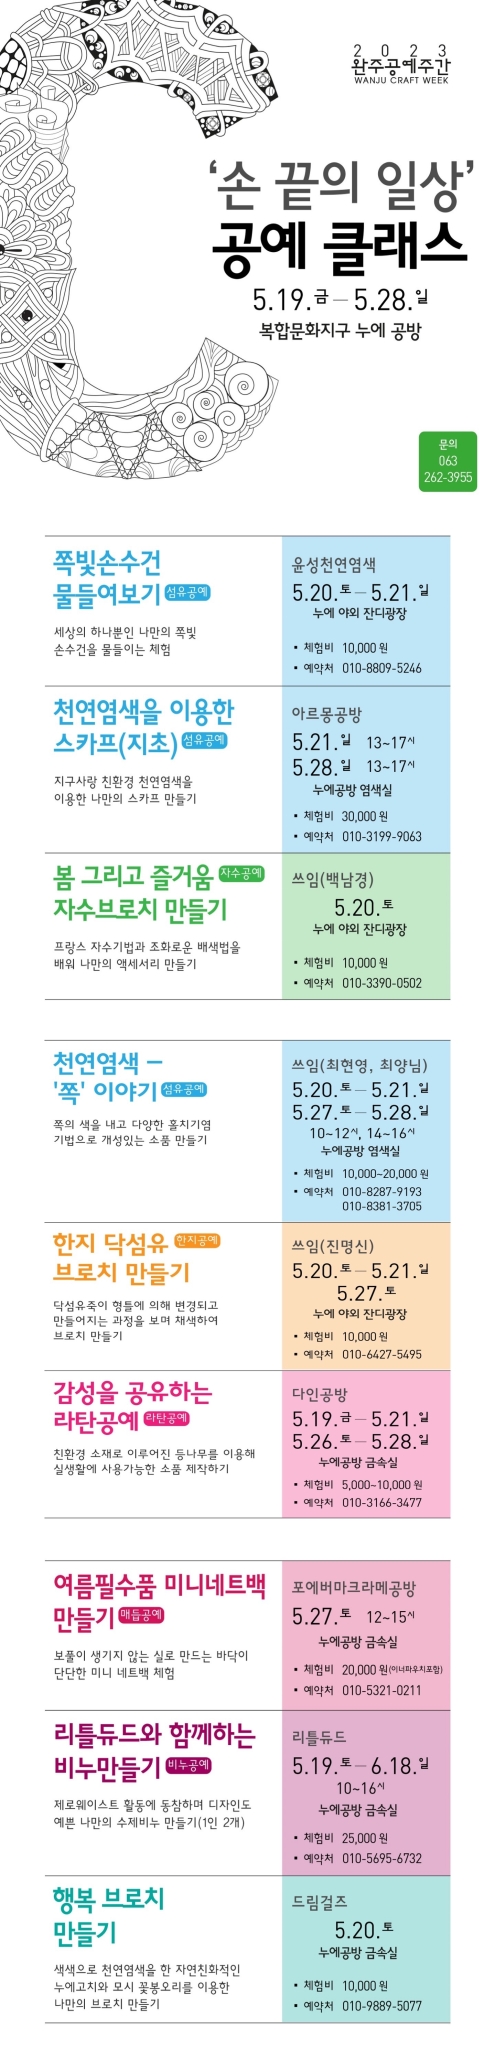 (재)완주문화재단 정책기획팀_[붙임2] 공예클래스2